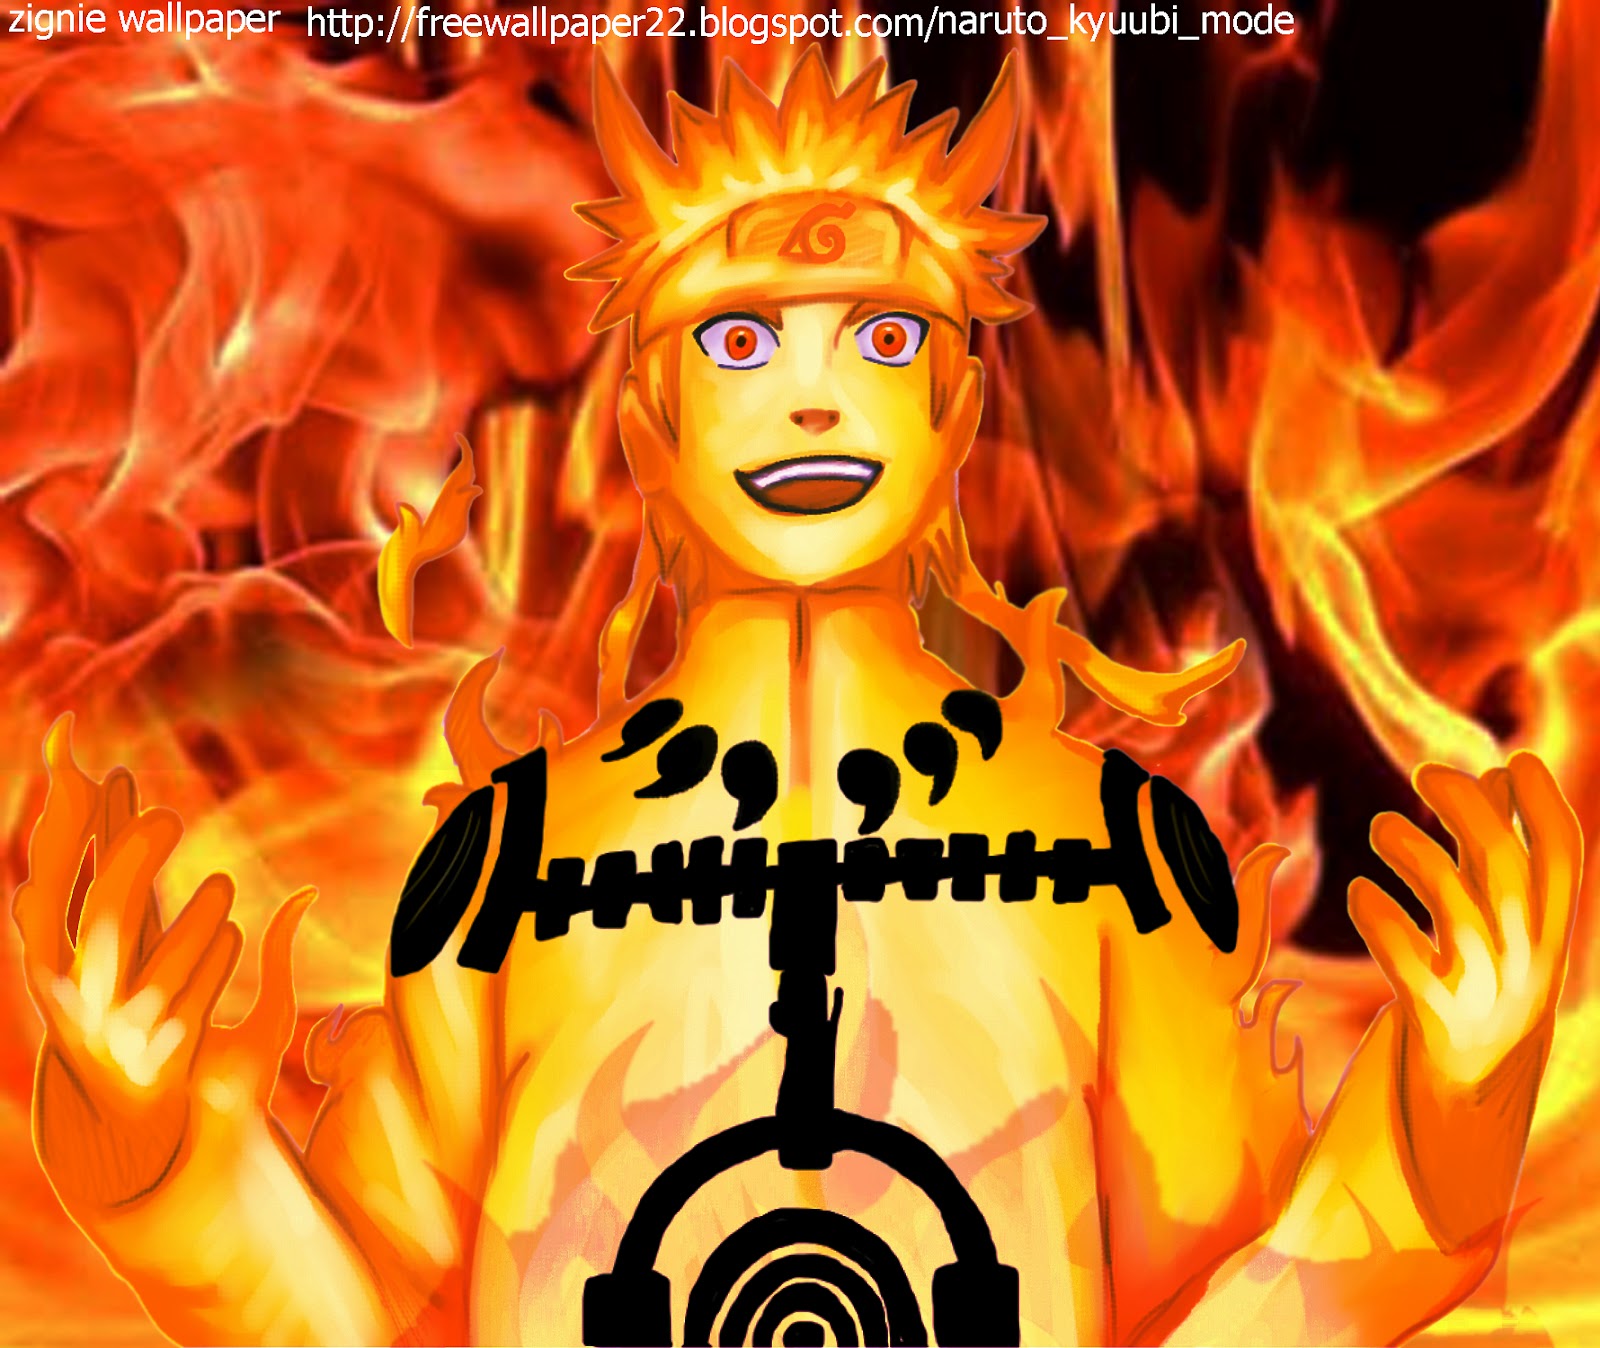 Naruto Kyuubi Mode 2